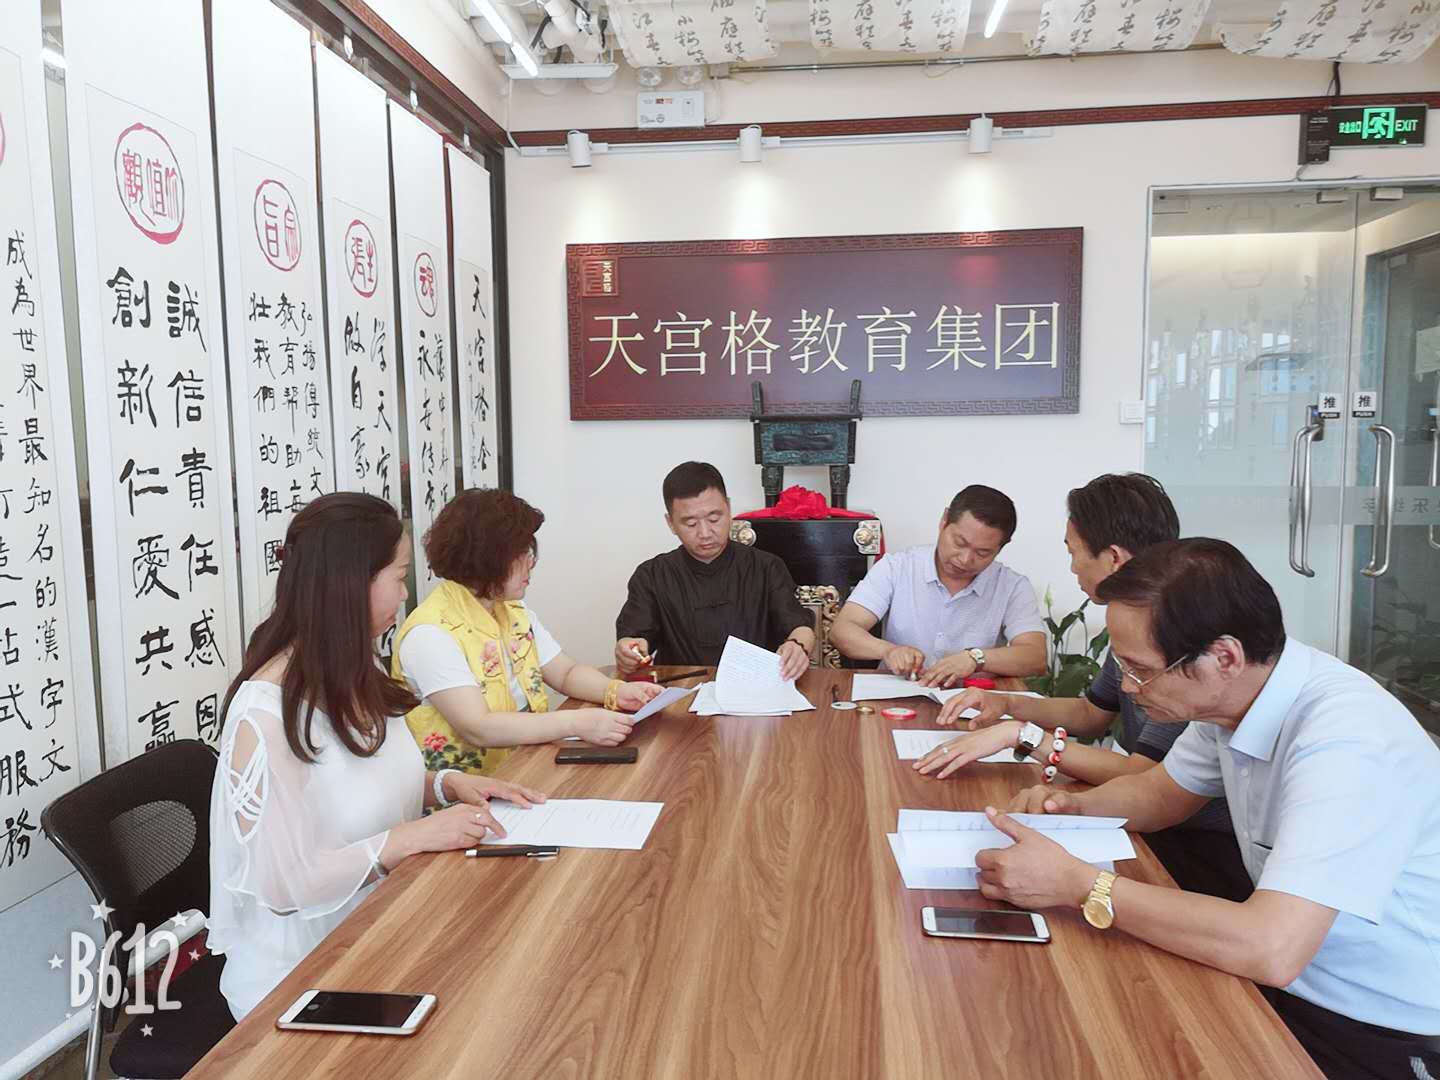 北京天宫格教育集团与人民日报社市场报网络版《德孝中华周刊》达成战略合作